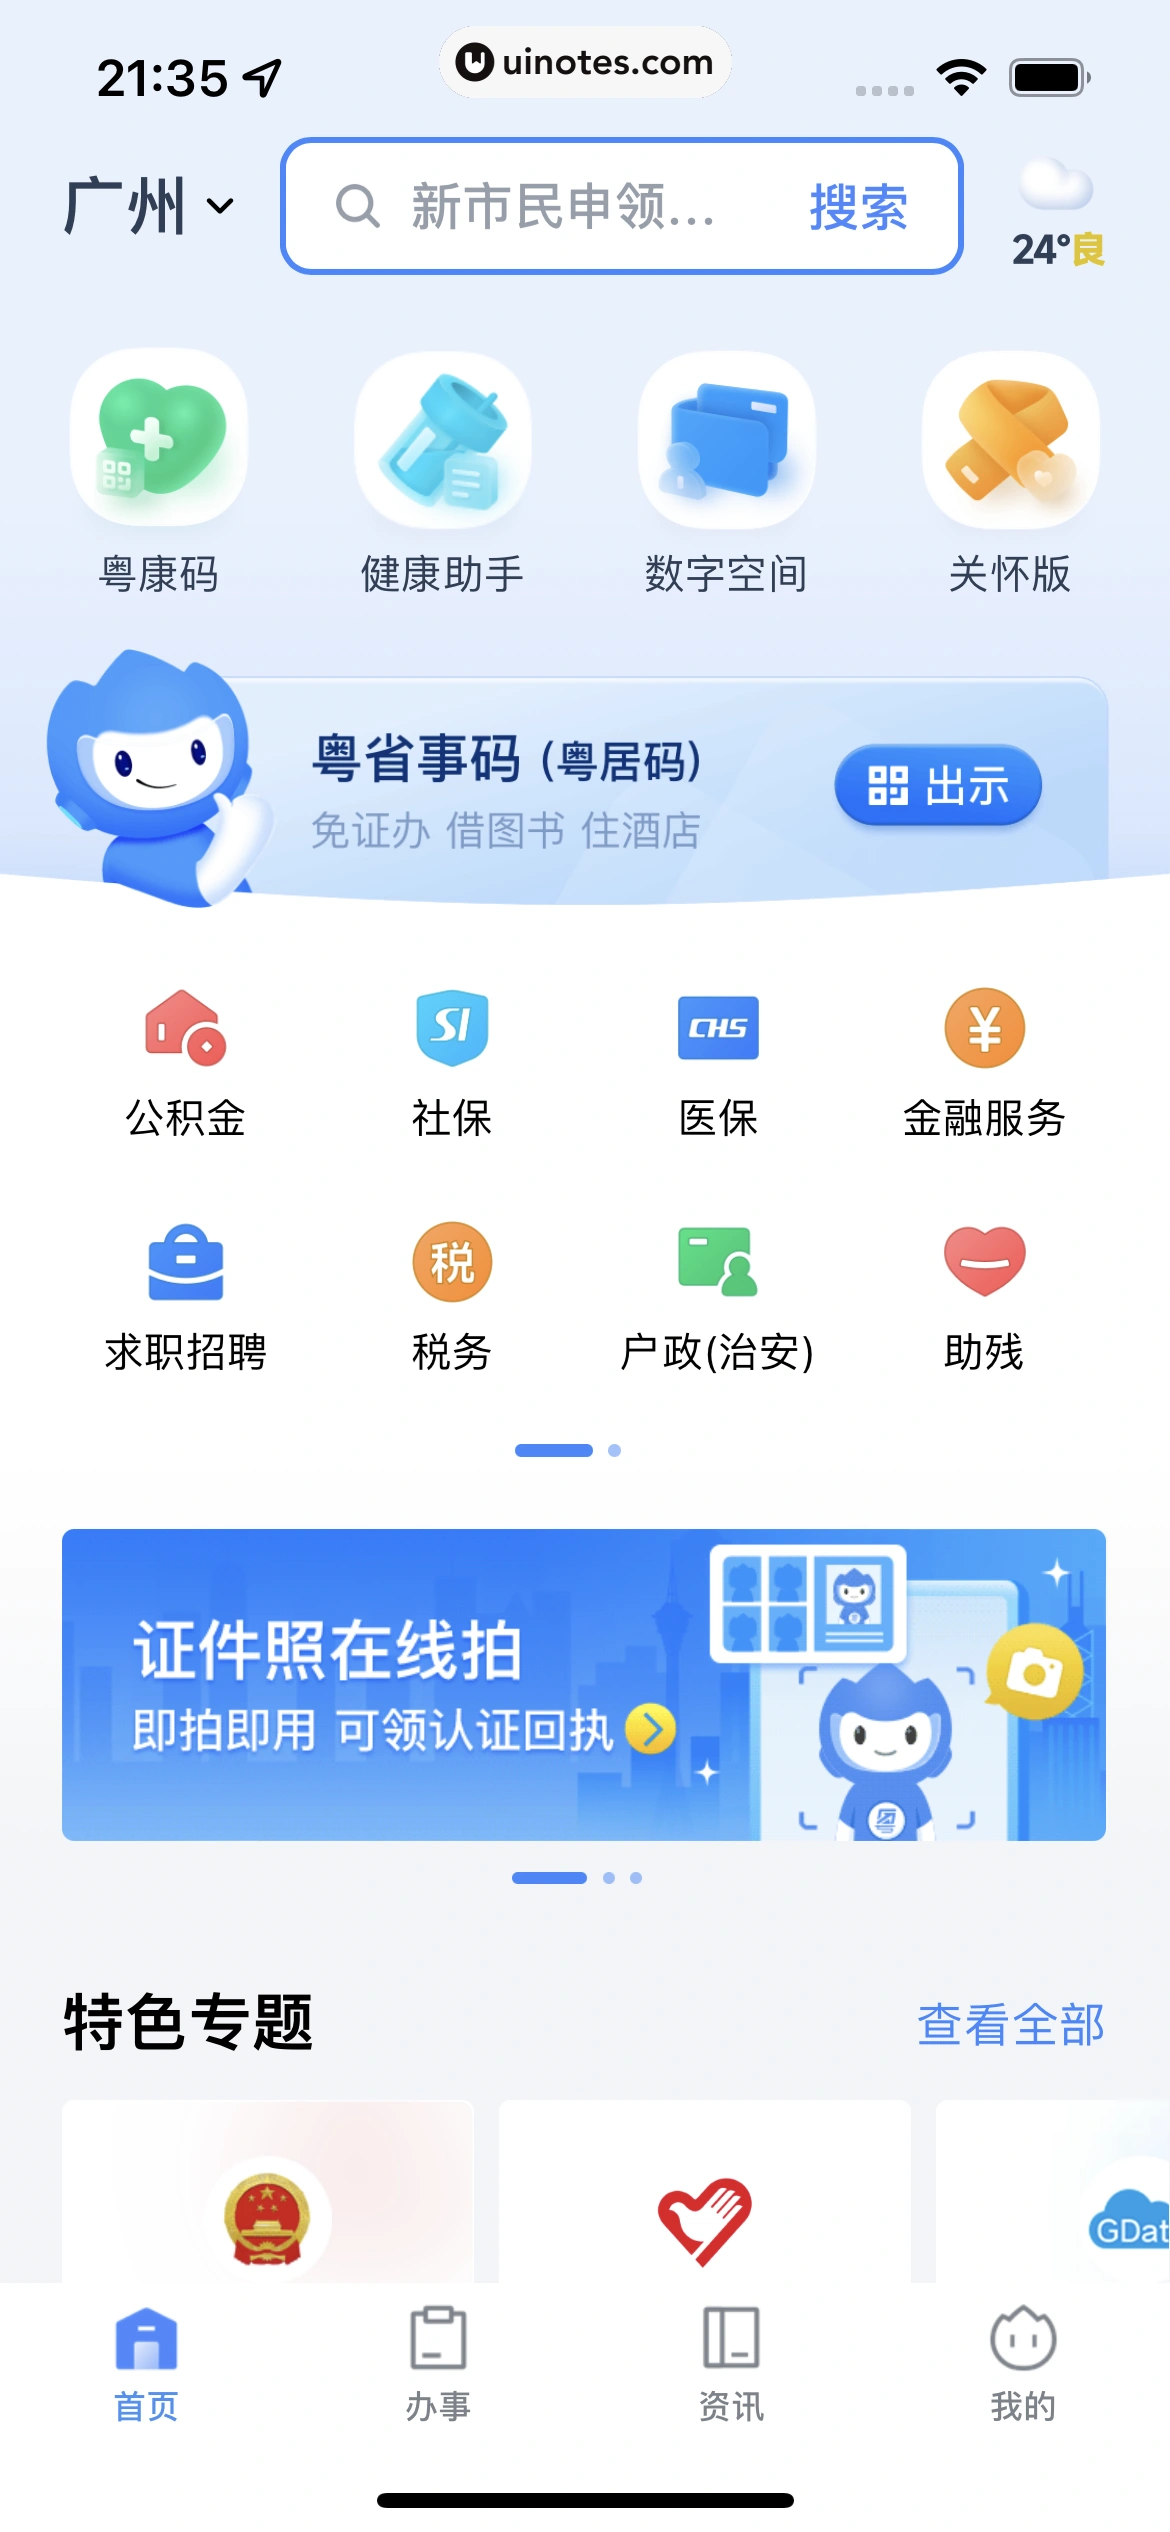 粤省事 App 截图 009 - UI Notes